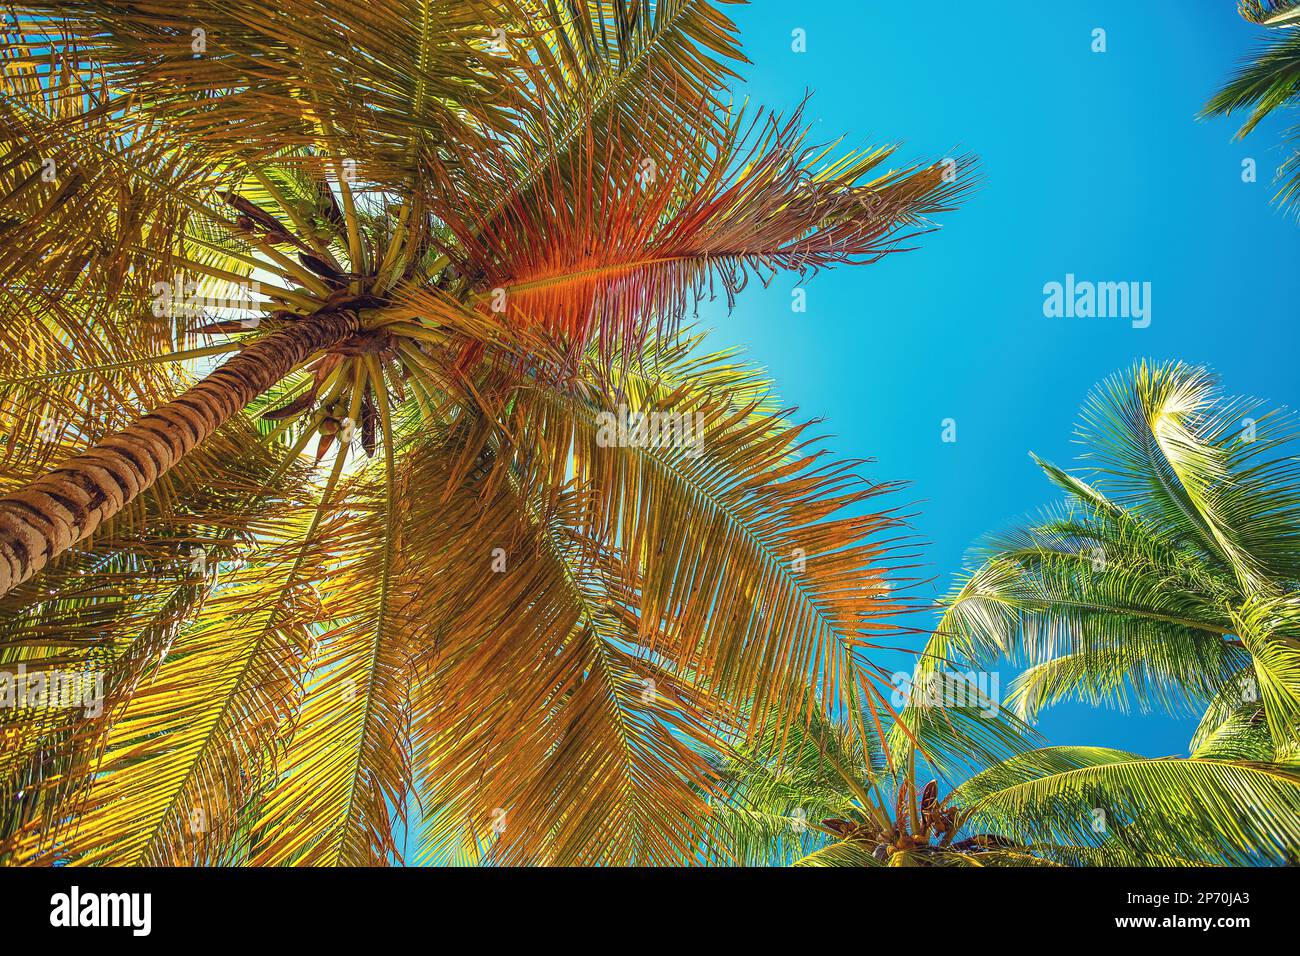 Palmera y playa tropical en Punta Cana, República Dominicana Foto de stock